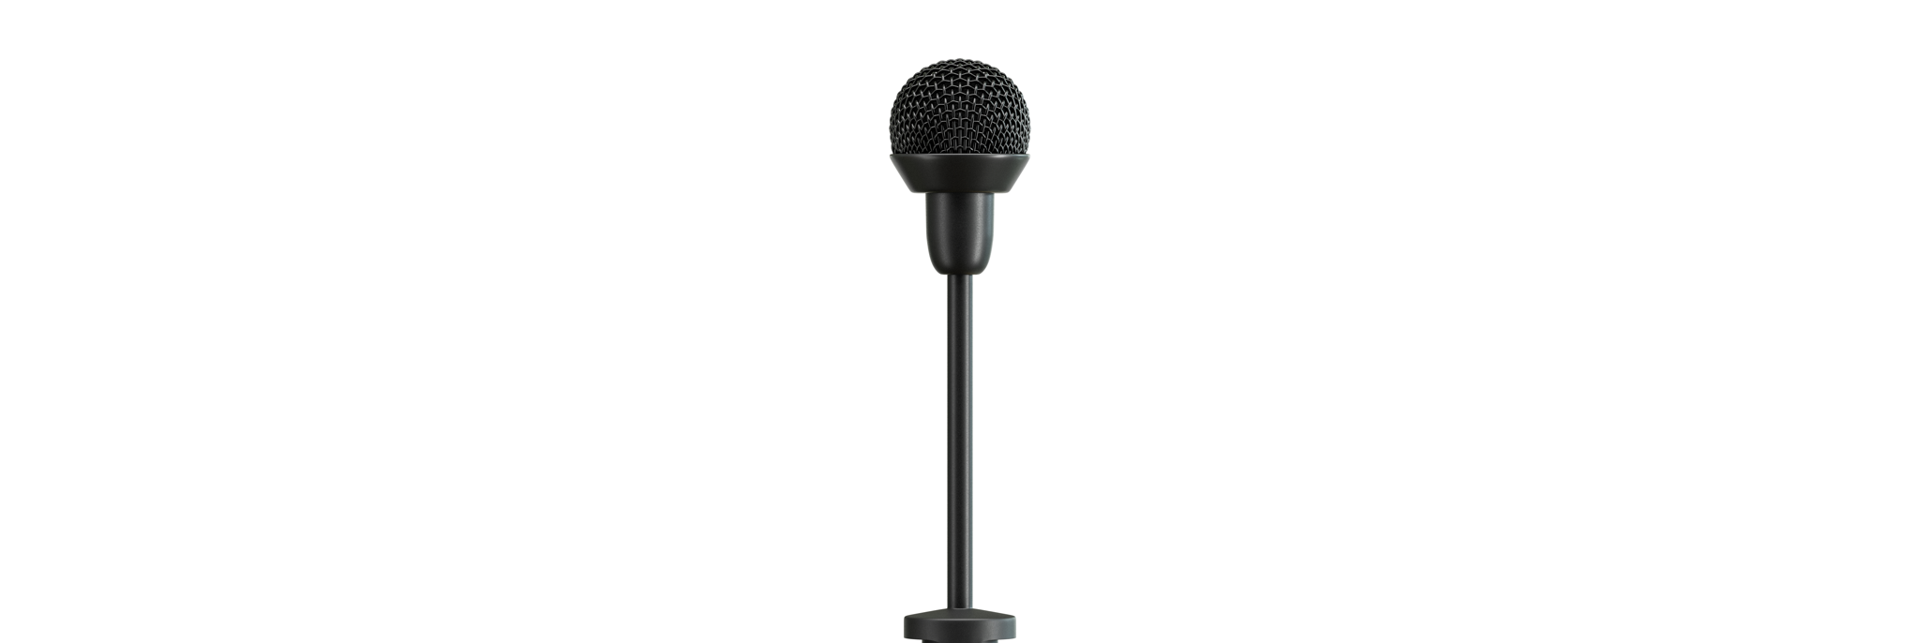 Sennheiser introduserer ny mikrofon for presentatører